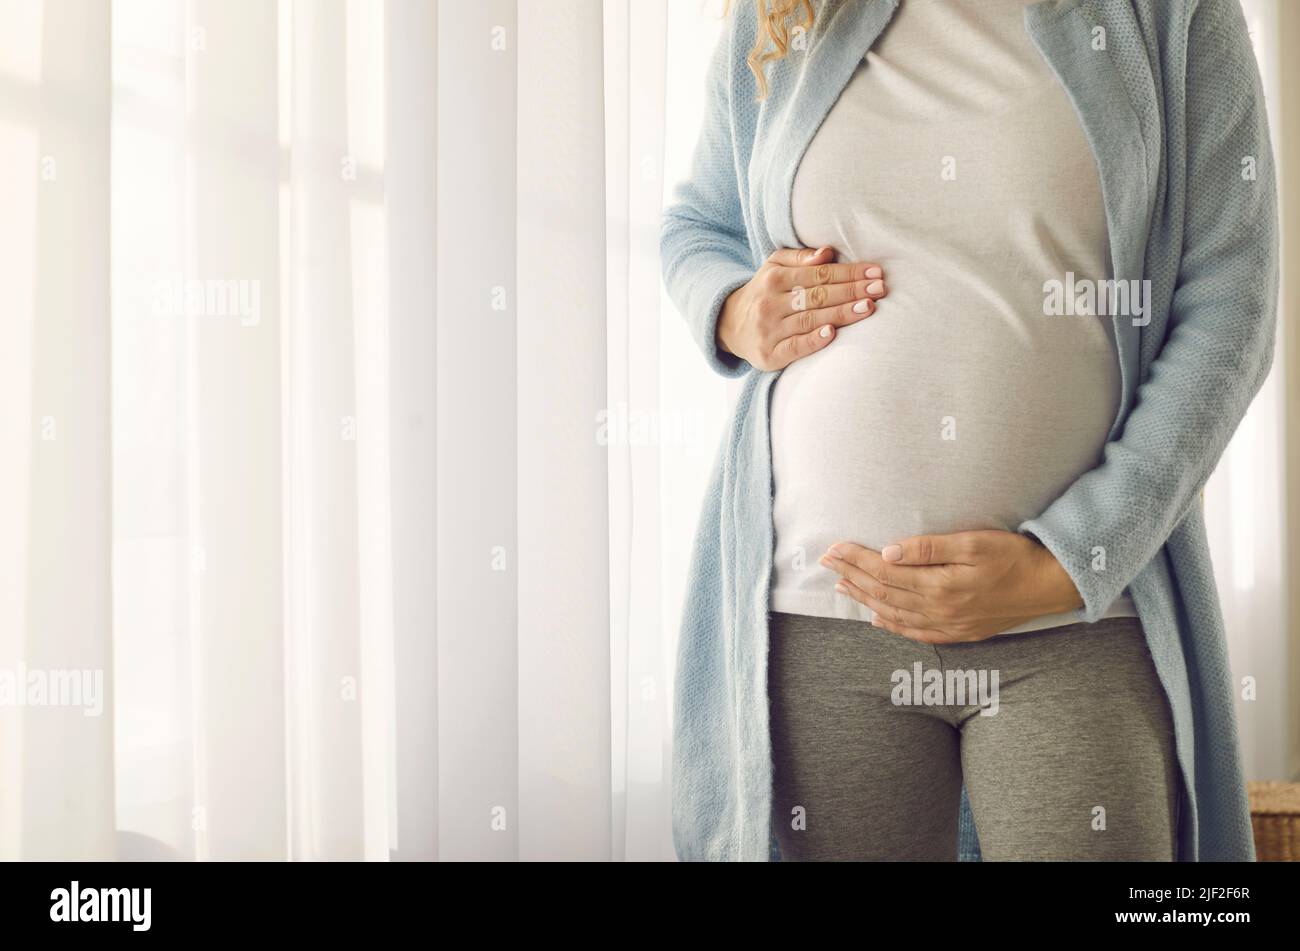 Bauch einer Schwangeren, die ihn sanft mit ihren Händen unterstützt, um das Baby zu treffen. Stockfoto